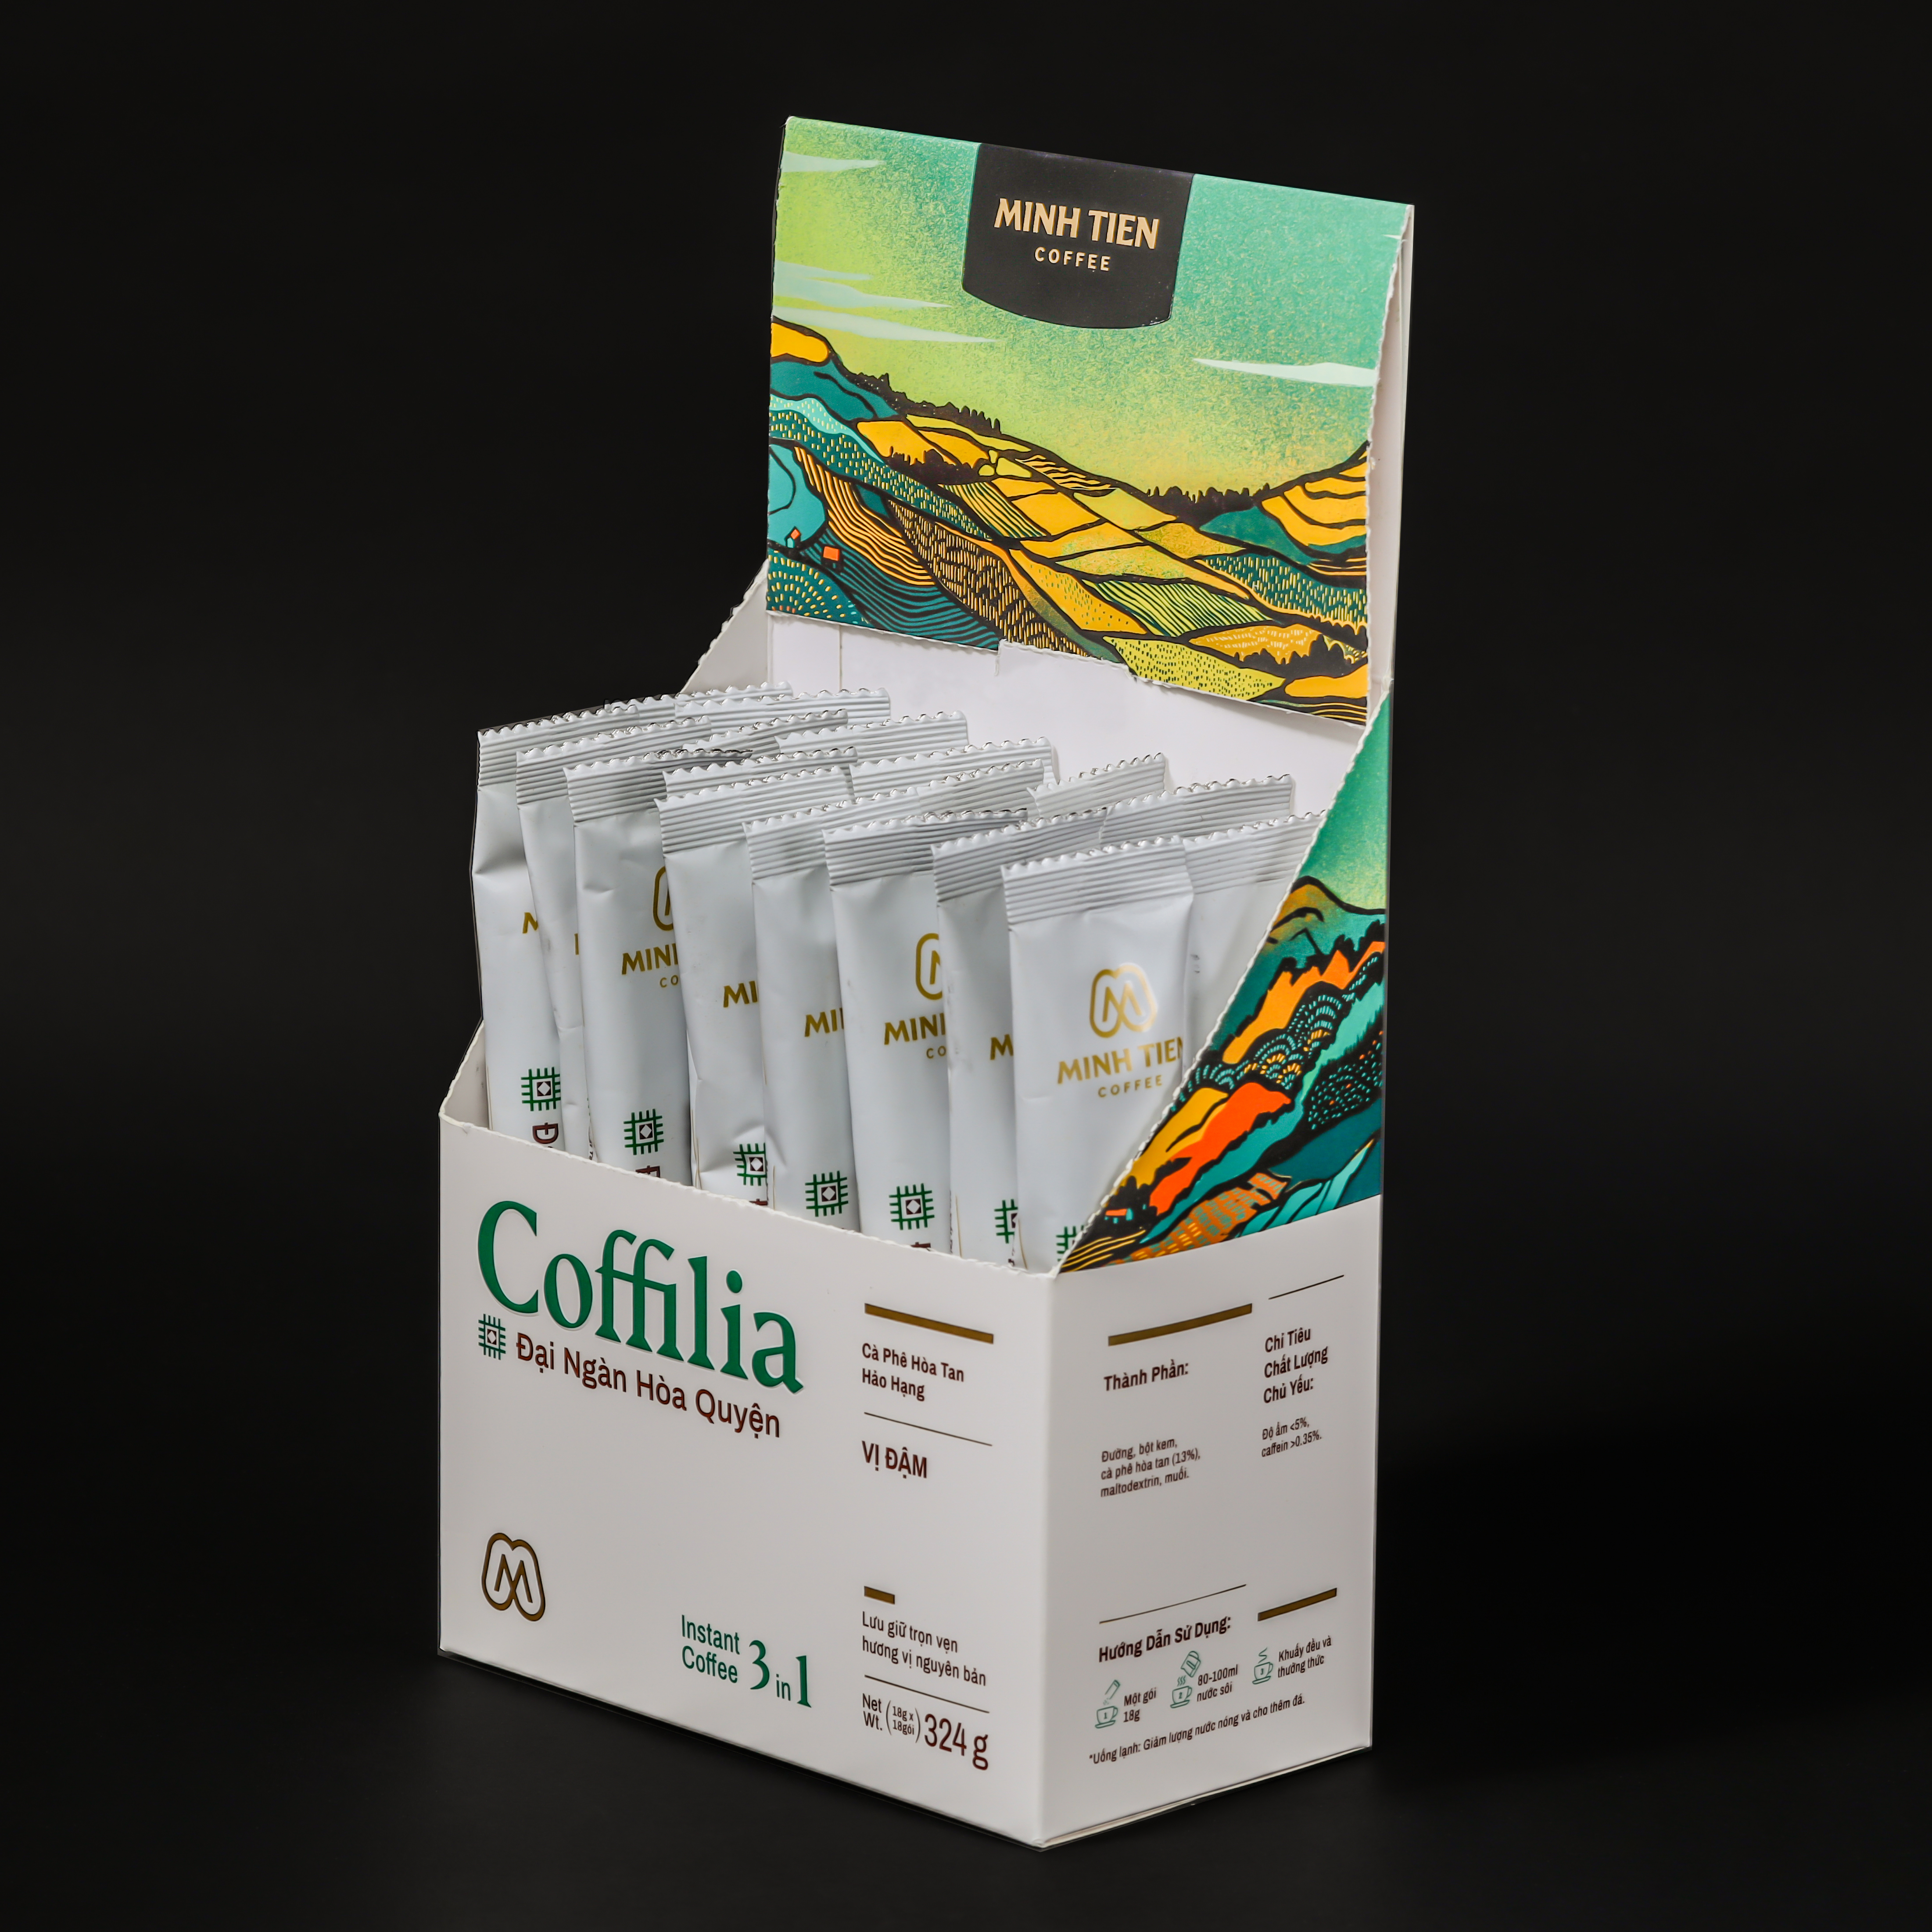 Cà phê hòa tan 3in1 - Sạch nguyên bản - Coffilia - Đại ngàn hòa quyện (18 gói)